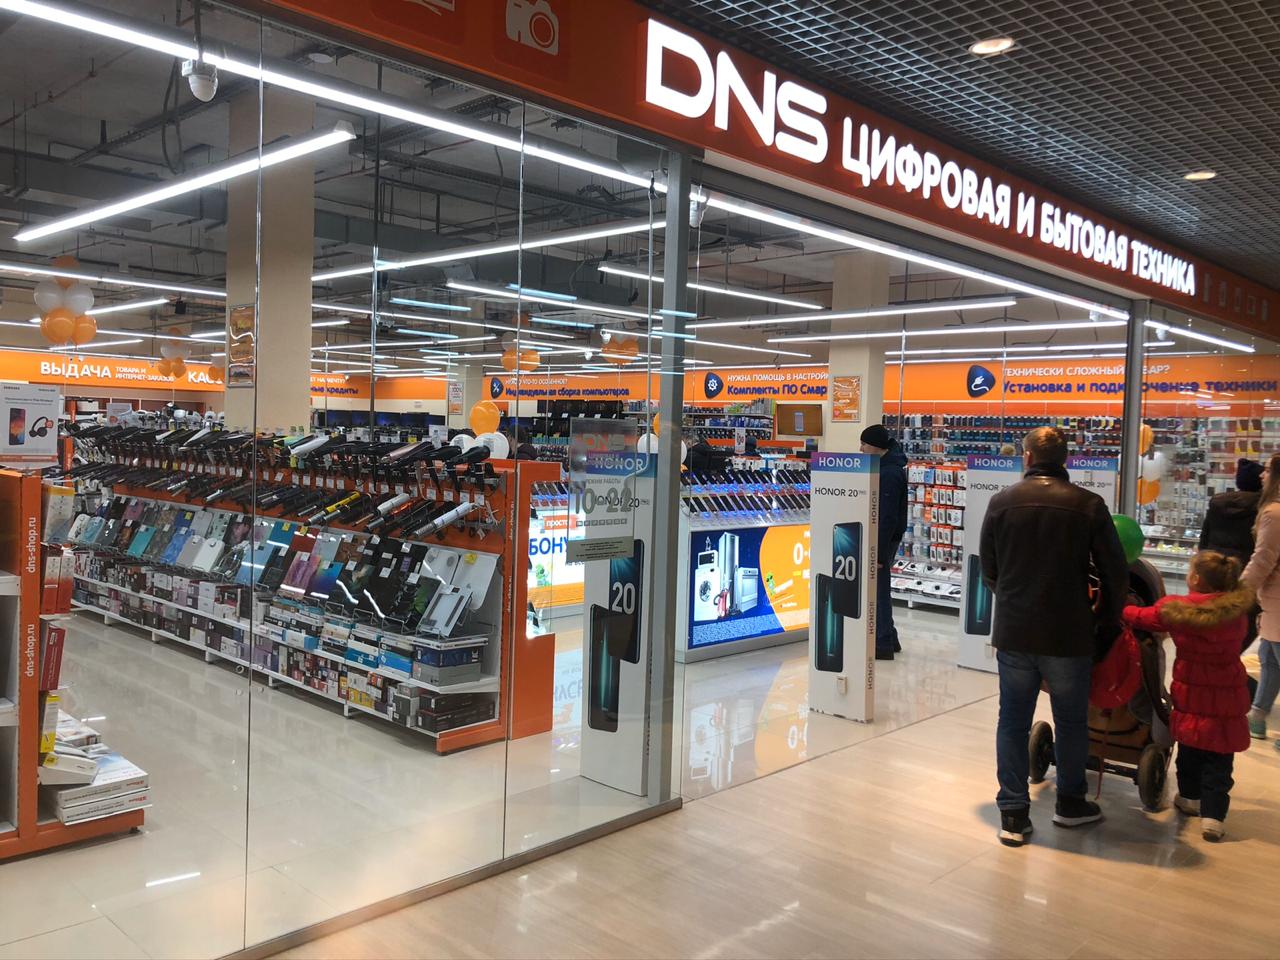 Сайт днс саратов. ДНС. DNS магазин. DNS Казахстан. DNS shop Тюмень.